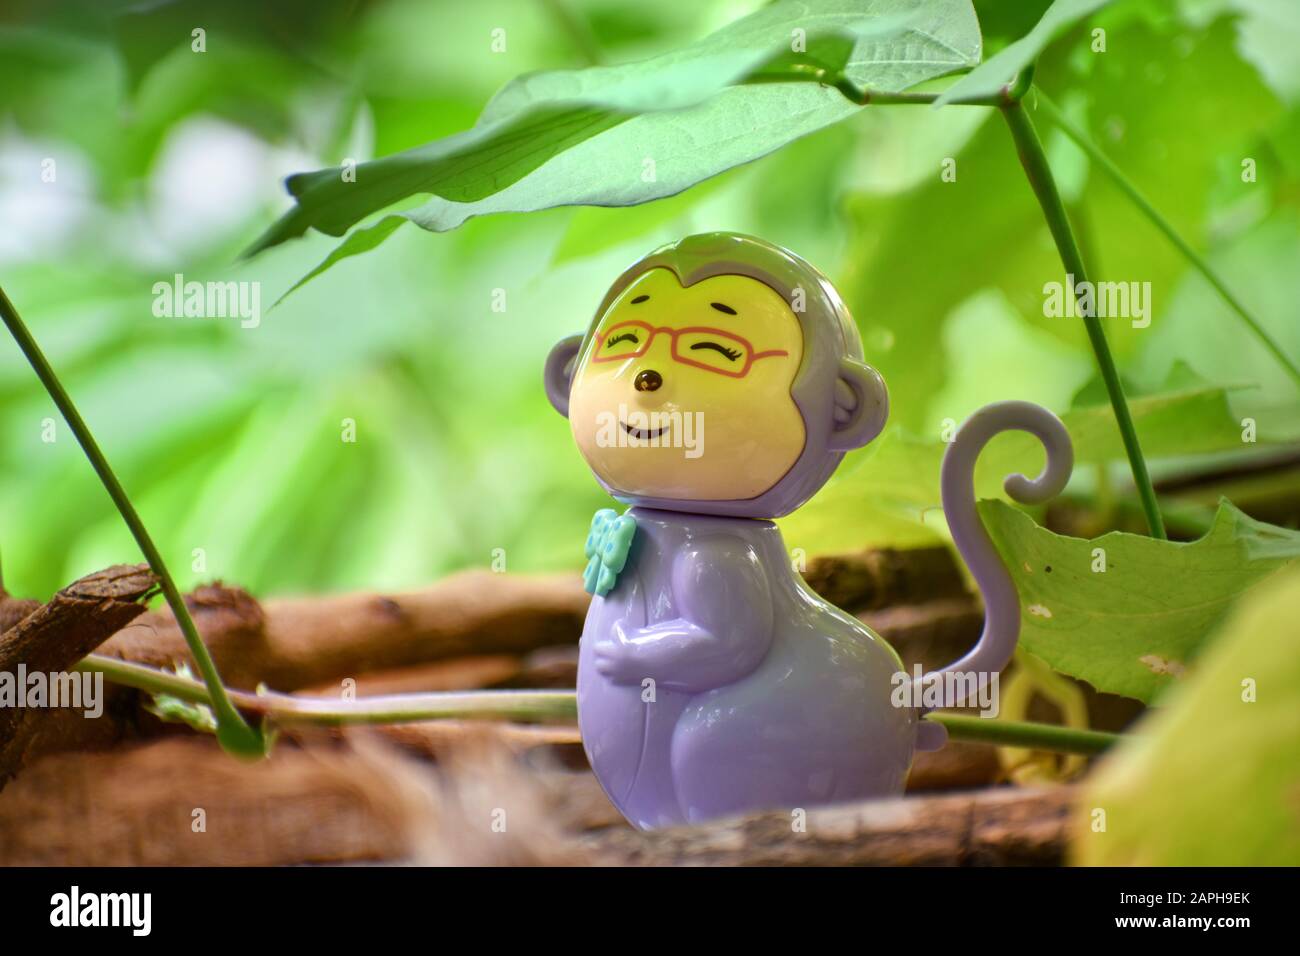 Ritratto di un giocattolo sorridente di scimmia con sfondo verdastro e foglie sfocate Foto Stock